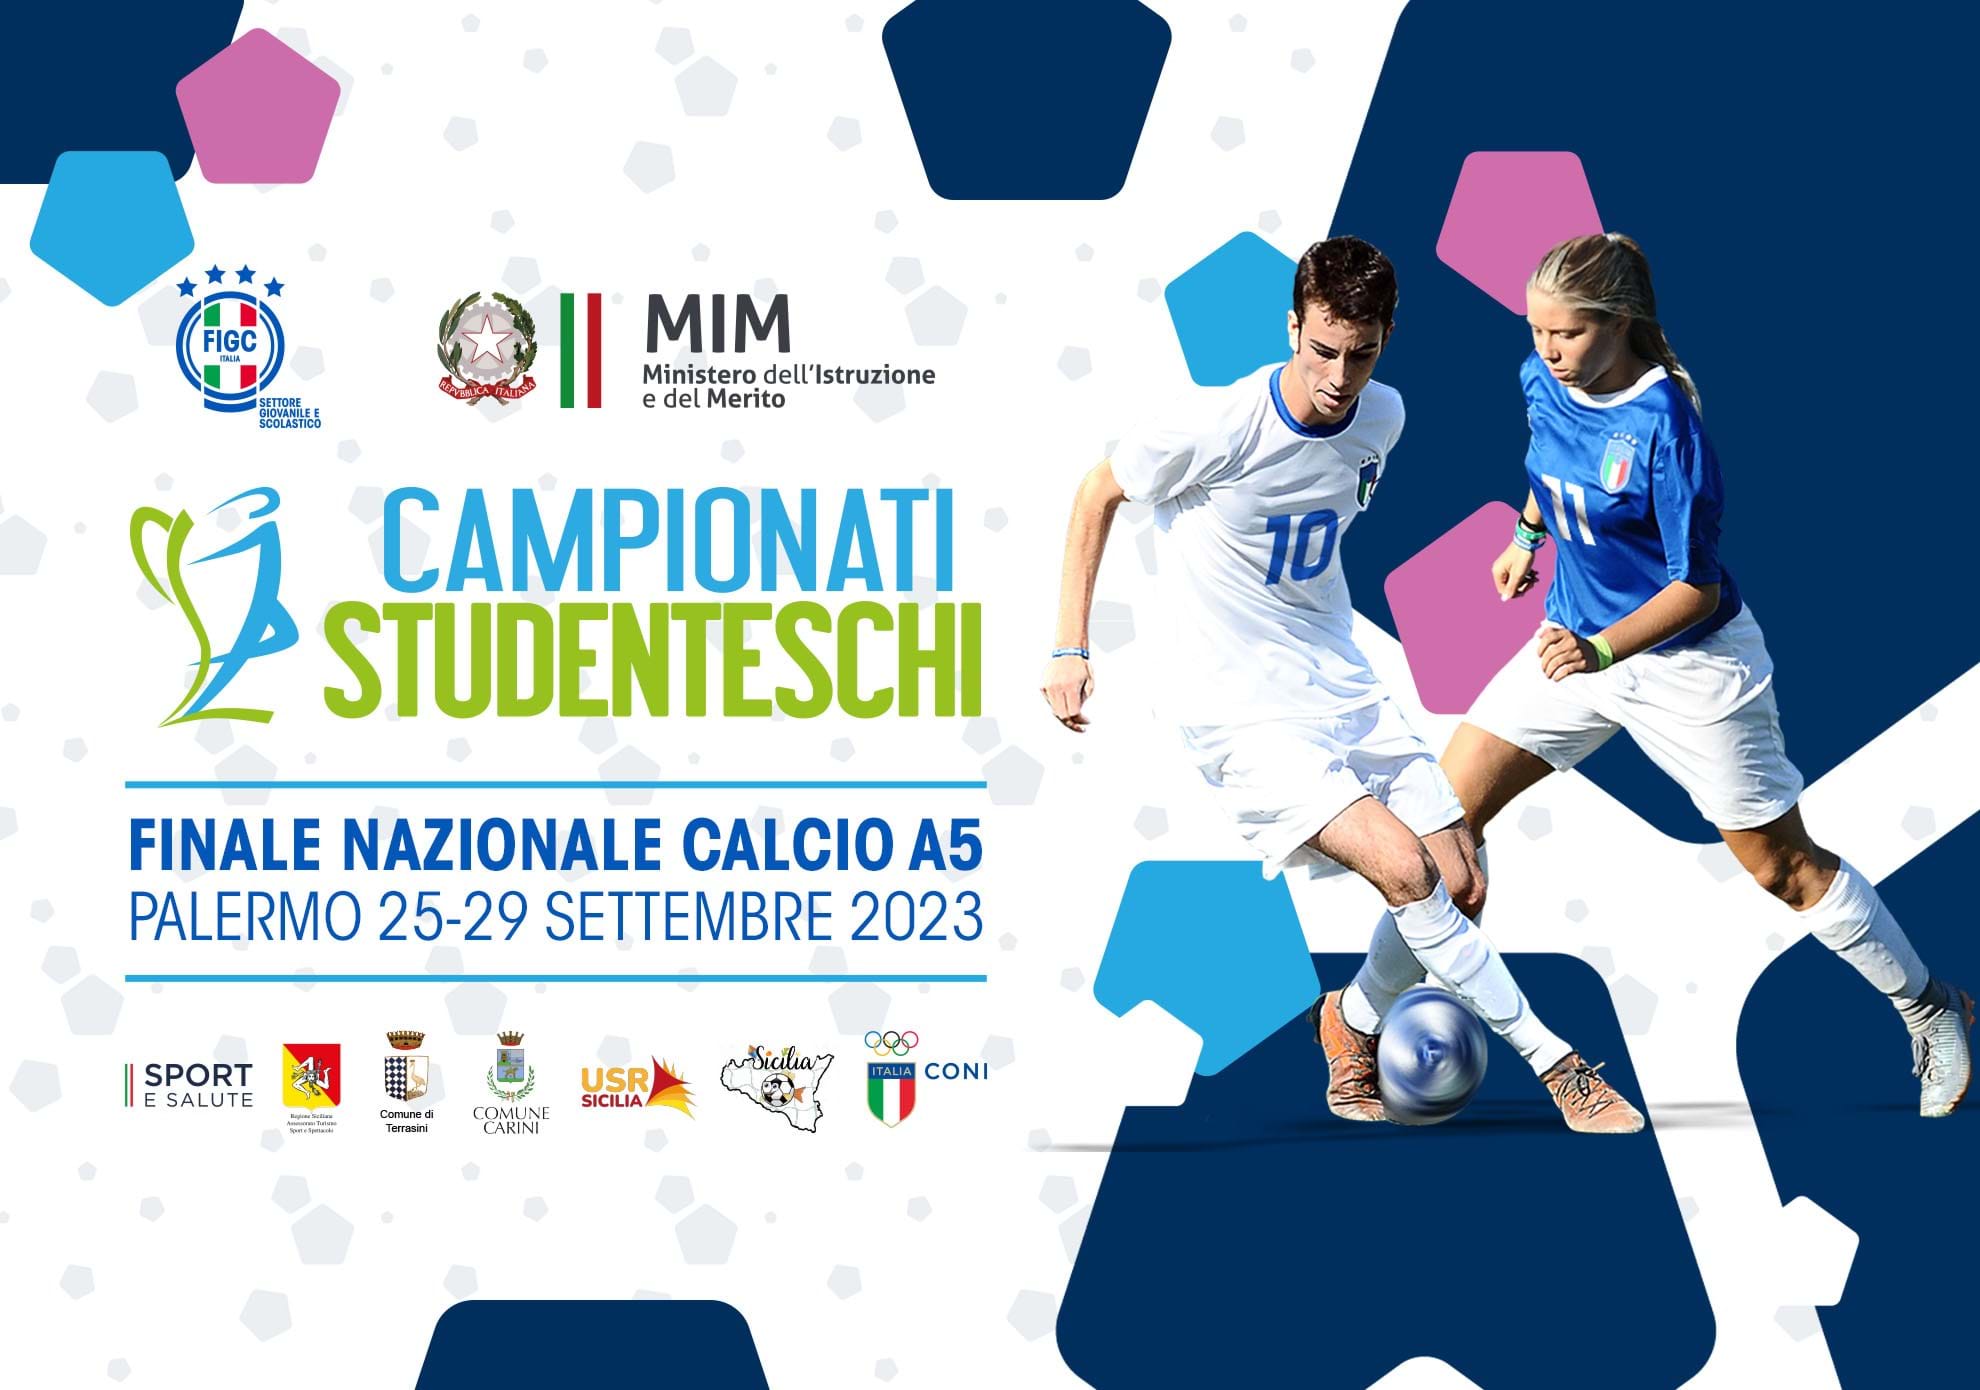 Campionati Studenteschi, a Palermo le finali nazionali di calcio a 5. Gravina e Valditara: "Sport veicolo di valori"